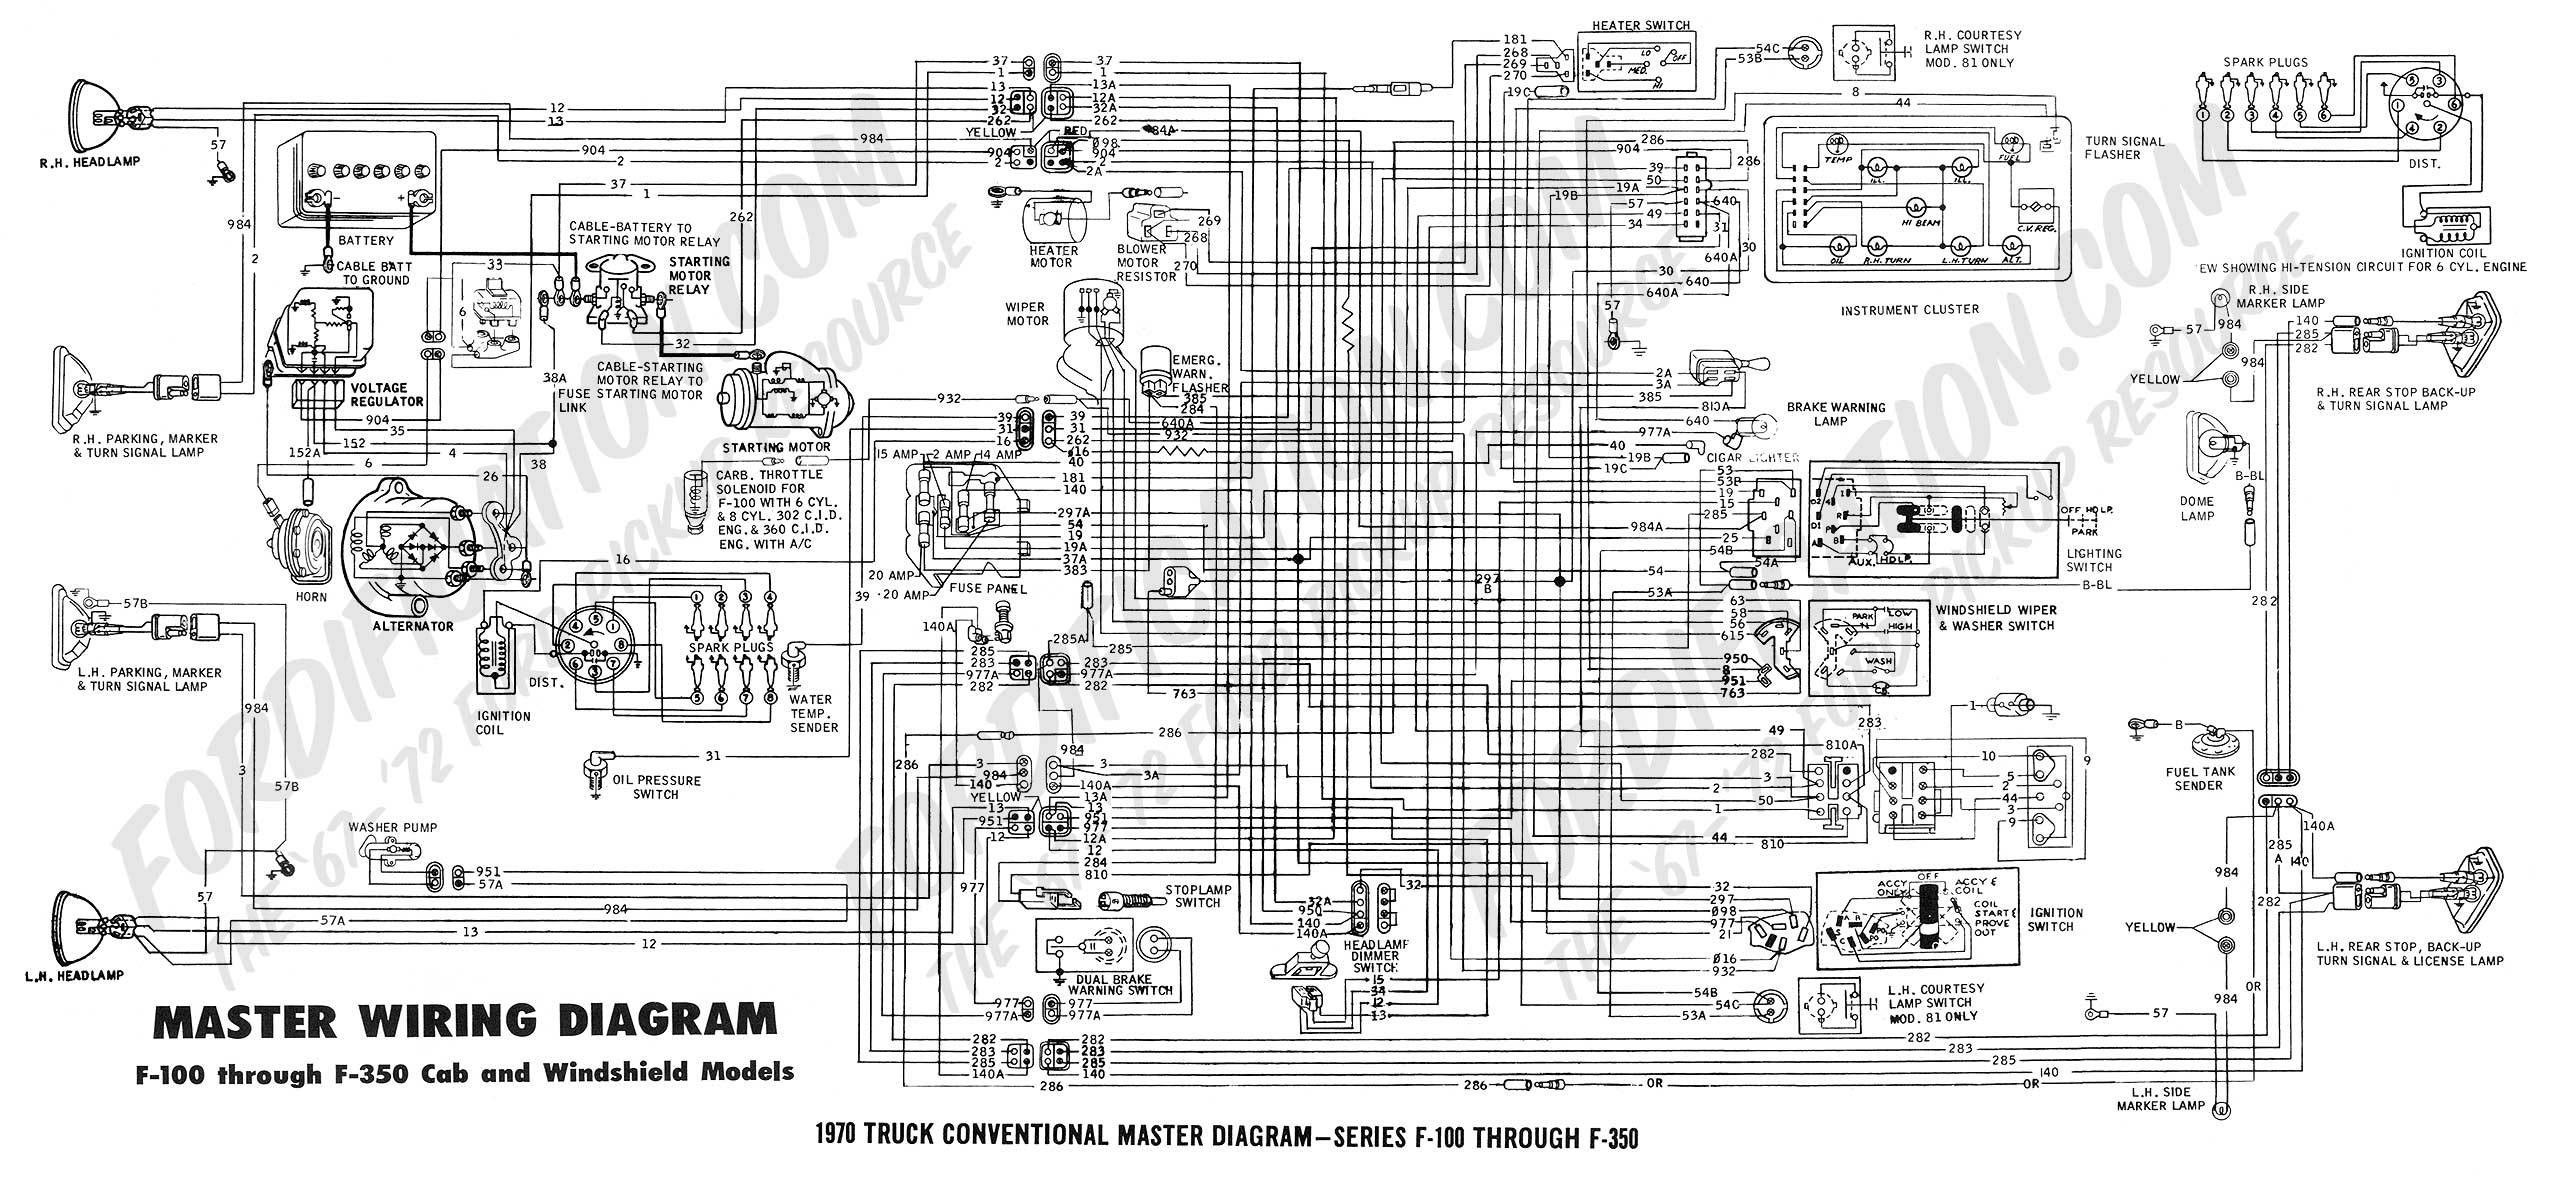 1981 Chevy Truck Fuse Box Diagram 1978 F 250 Fuse Box Data Schematics Wiring Diagram • Of 1981 Chevy Truck Fuse Box Diagram